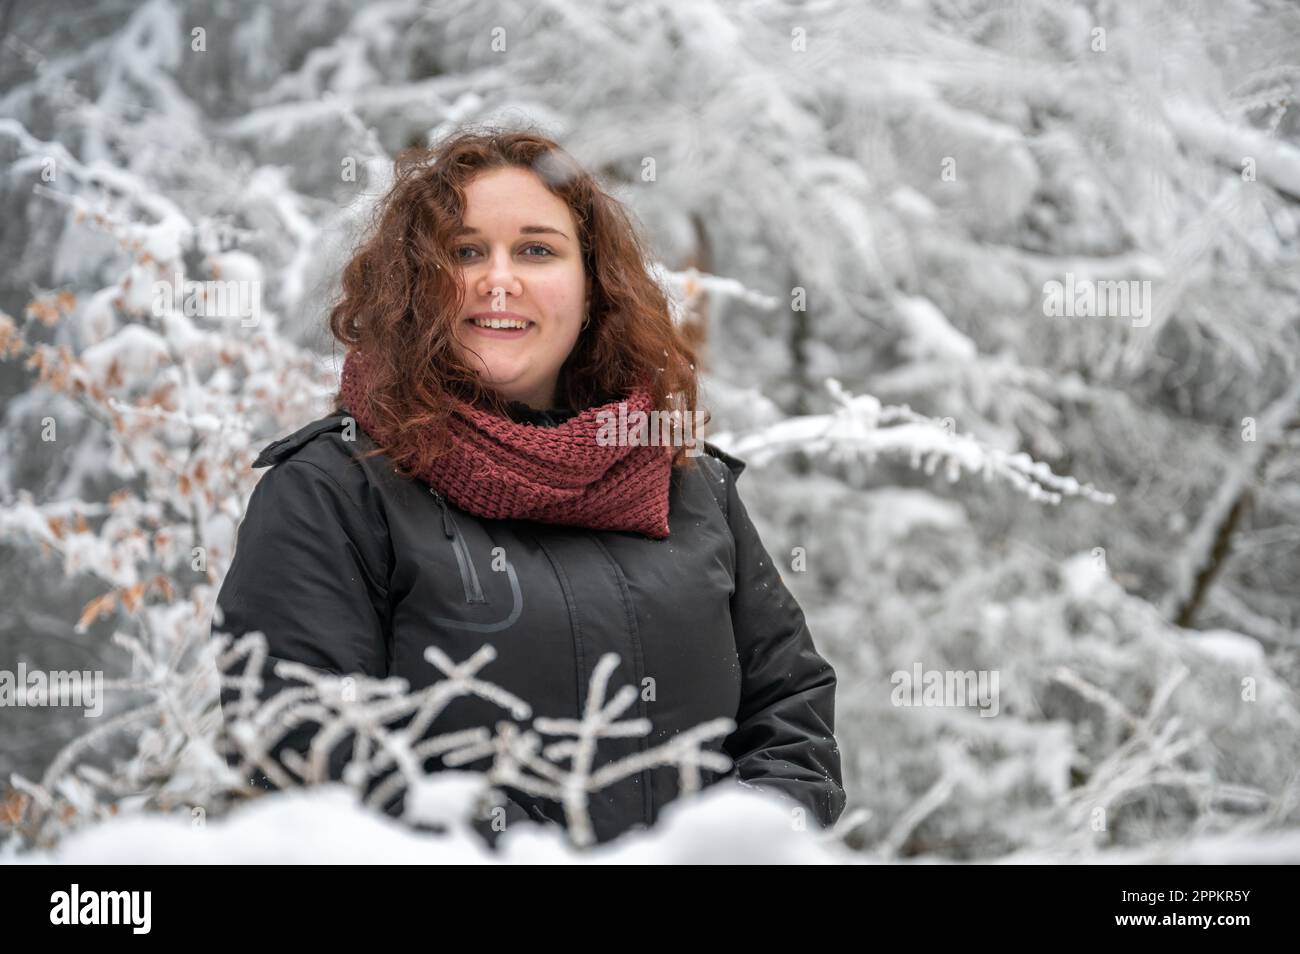 Eine junge Frau mit braunem lockigem Haar lächelt und schaut in die Kamera, während sie im Winter mitten in einem verschneiten Wald steht Stockfoto